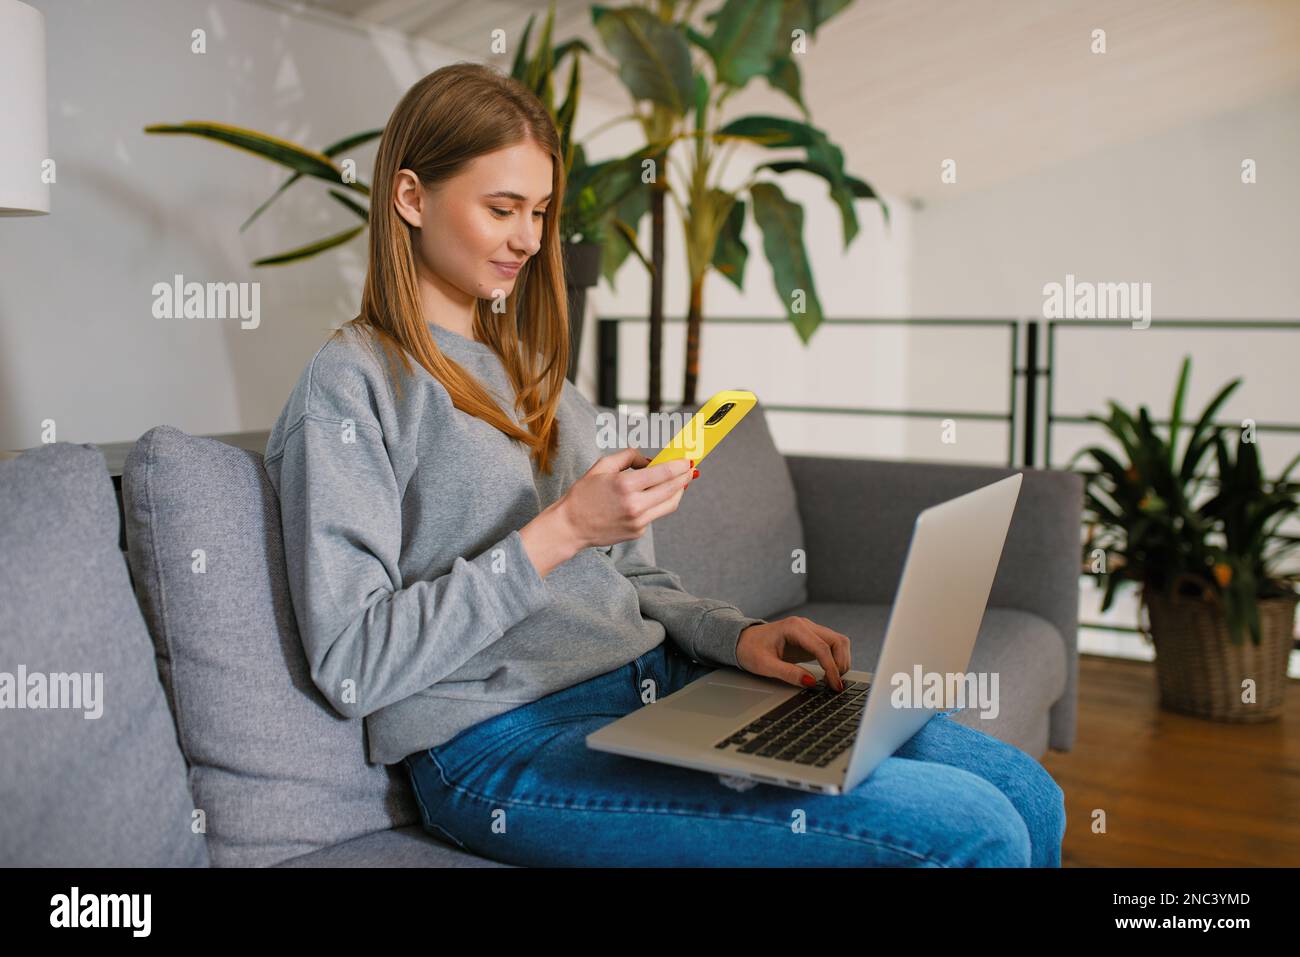 Décontracté bonne jeune femme utilisant un smartphone à la main un écran d'ordinateur portable moderne assis sur un canapé confortable à la maison, mains au travail avec la technologie numérique Banque D'Images